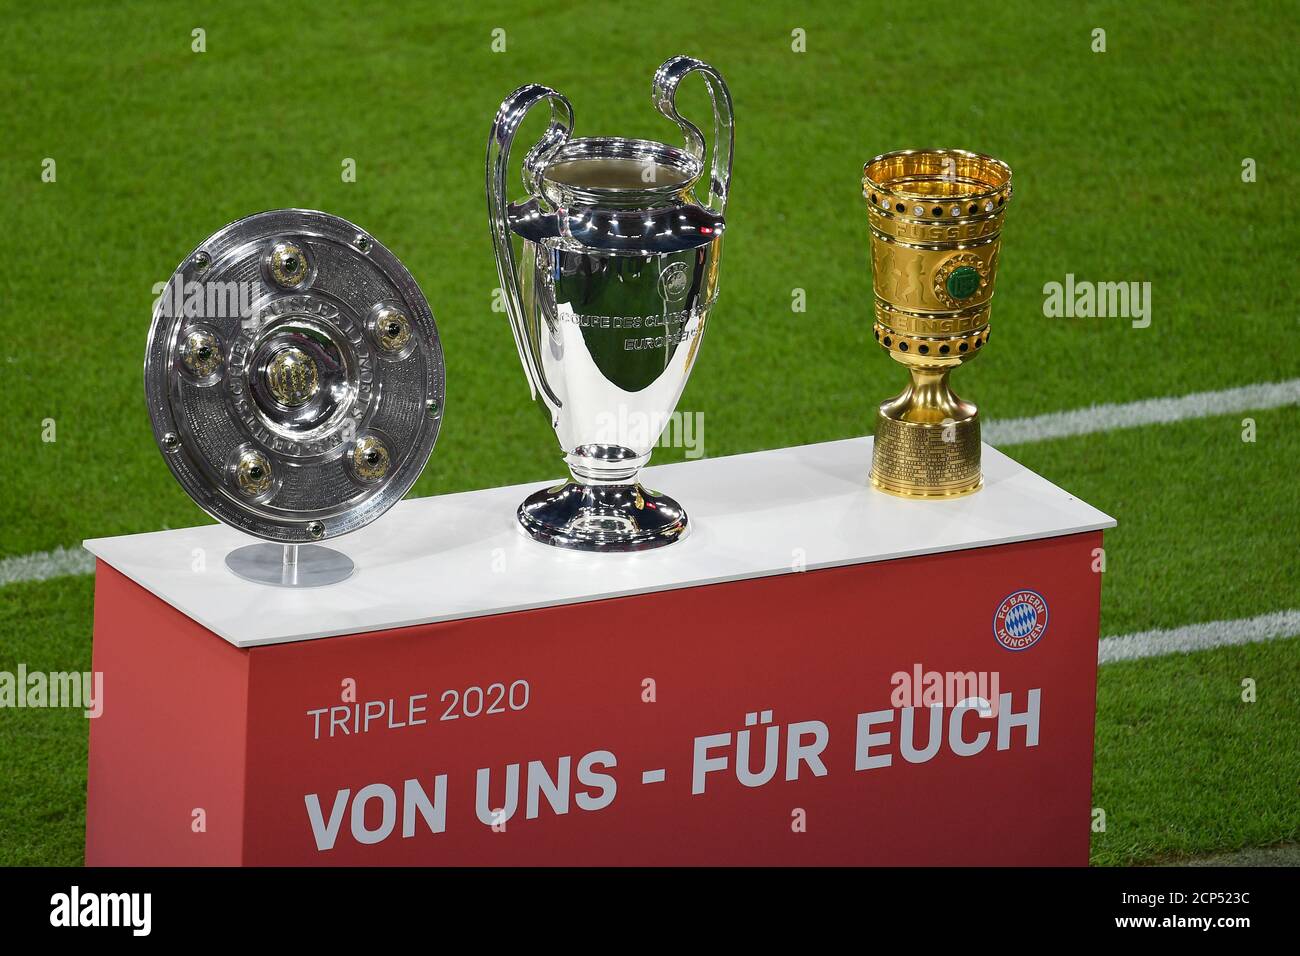 La coupe triple, la coupe de championnat, la coupe de la Ligue des champions  et la coupe DFB sont présentées. Trophée, coupe, trophée. Football 1.  Bundesliga saison 2020/2021, 1 jour d'allumette, matchda01,